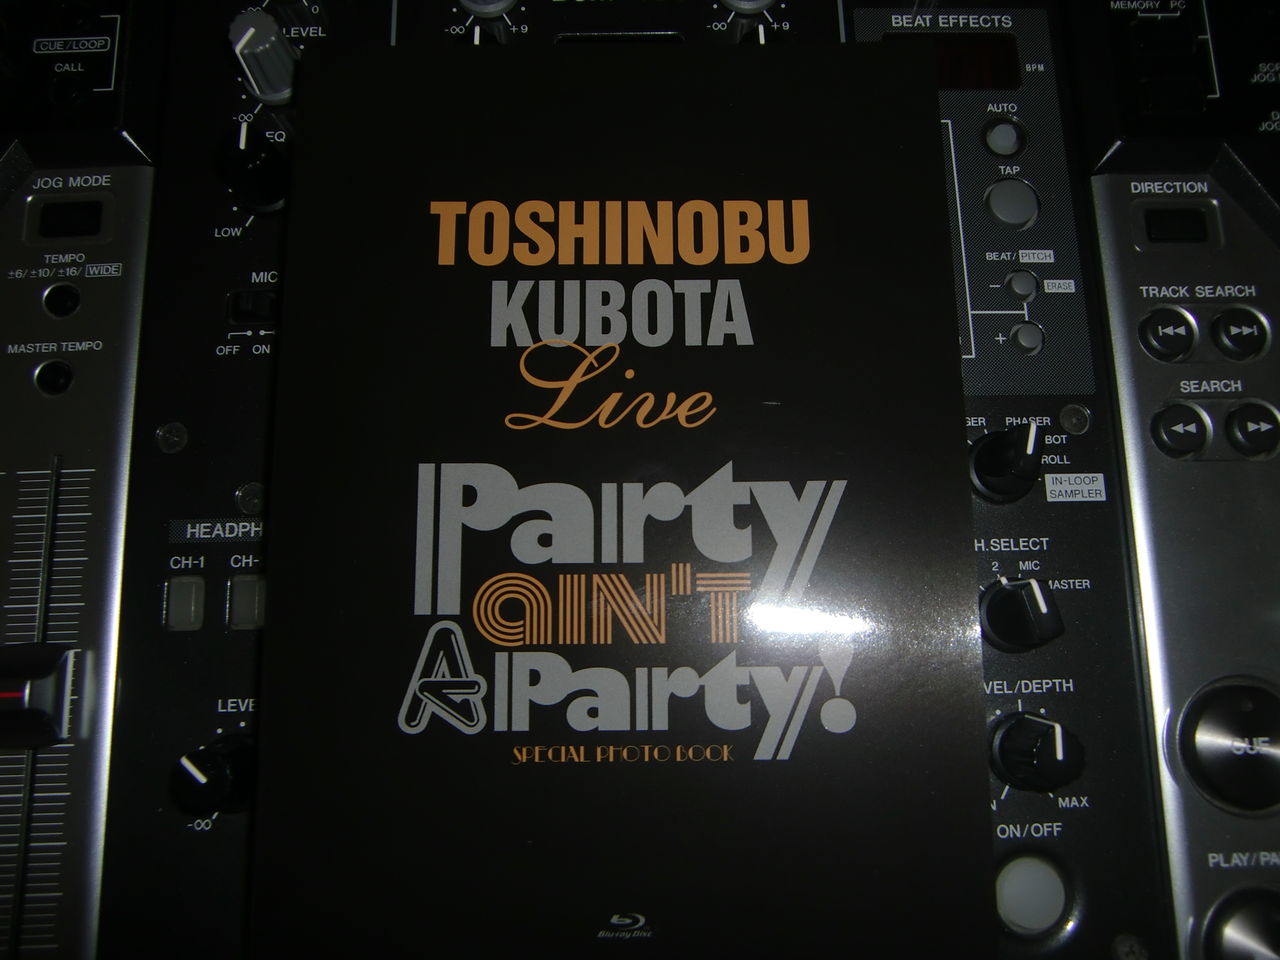 久保田利伸 25th Anniversary Toshinobu Kubota Concert Tour 12 Party Ain T A Party Blu Ray Review Flavor Of R B Hiphop